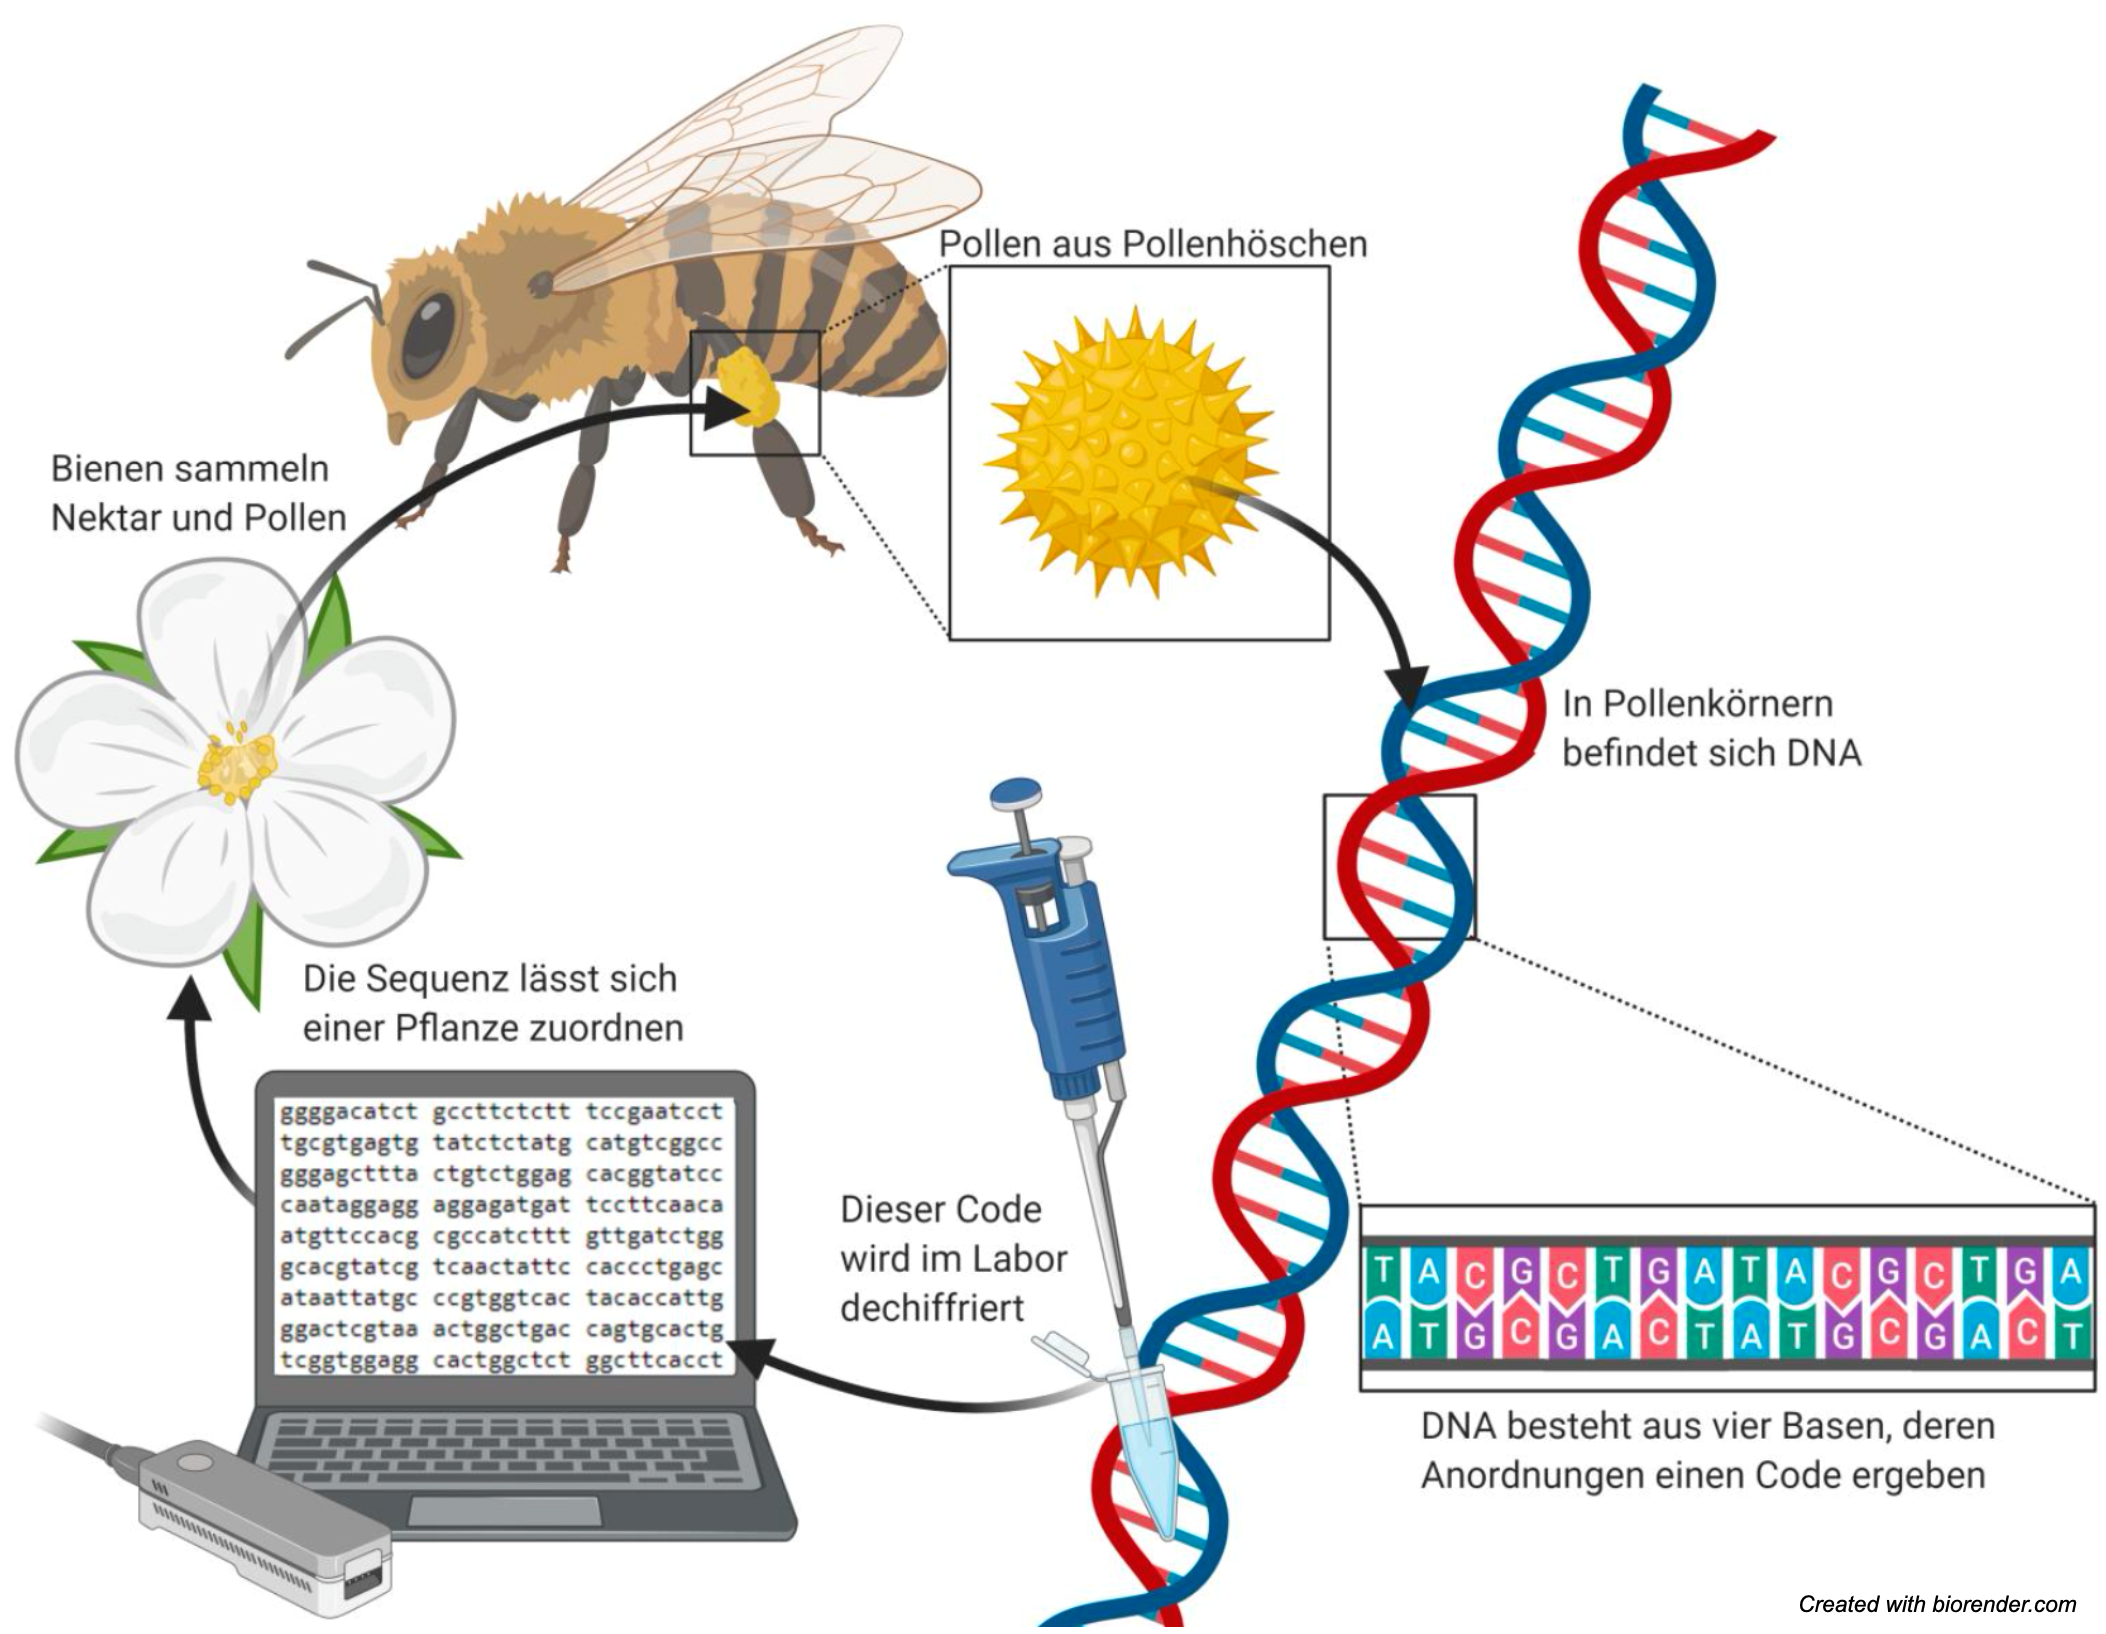 Vortrag Prudnikow: Pollen-DNA-Sequenzierung zur Analyse des Sammelverhaltens von Honigbienen und Hummeln.